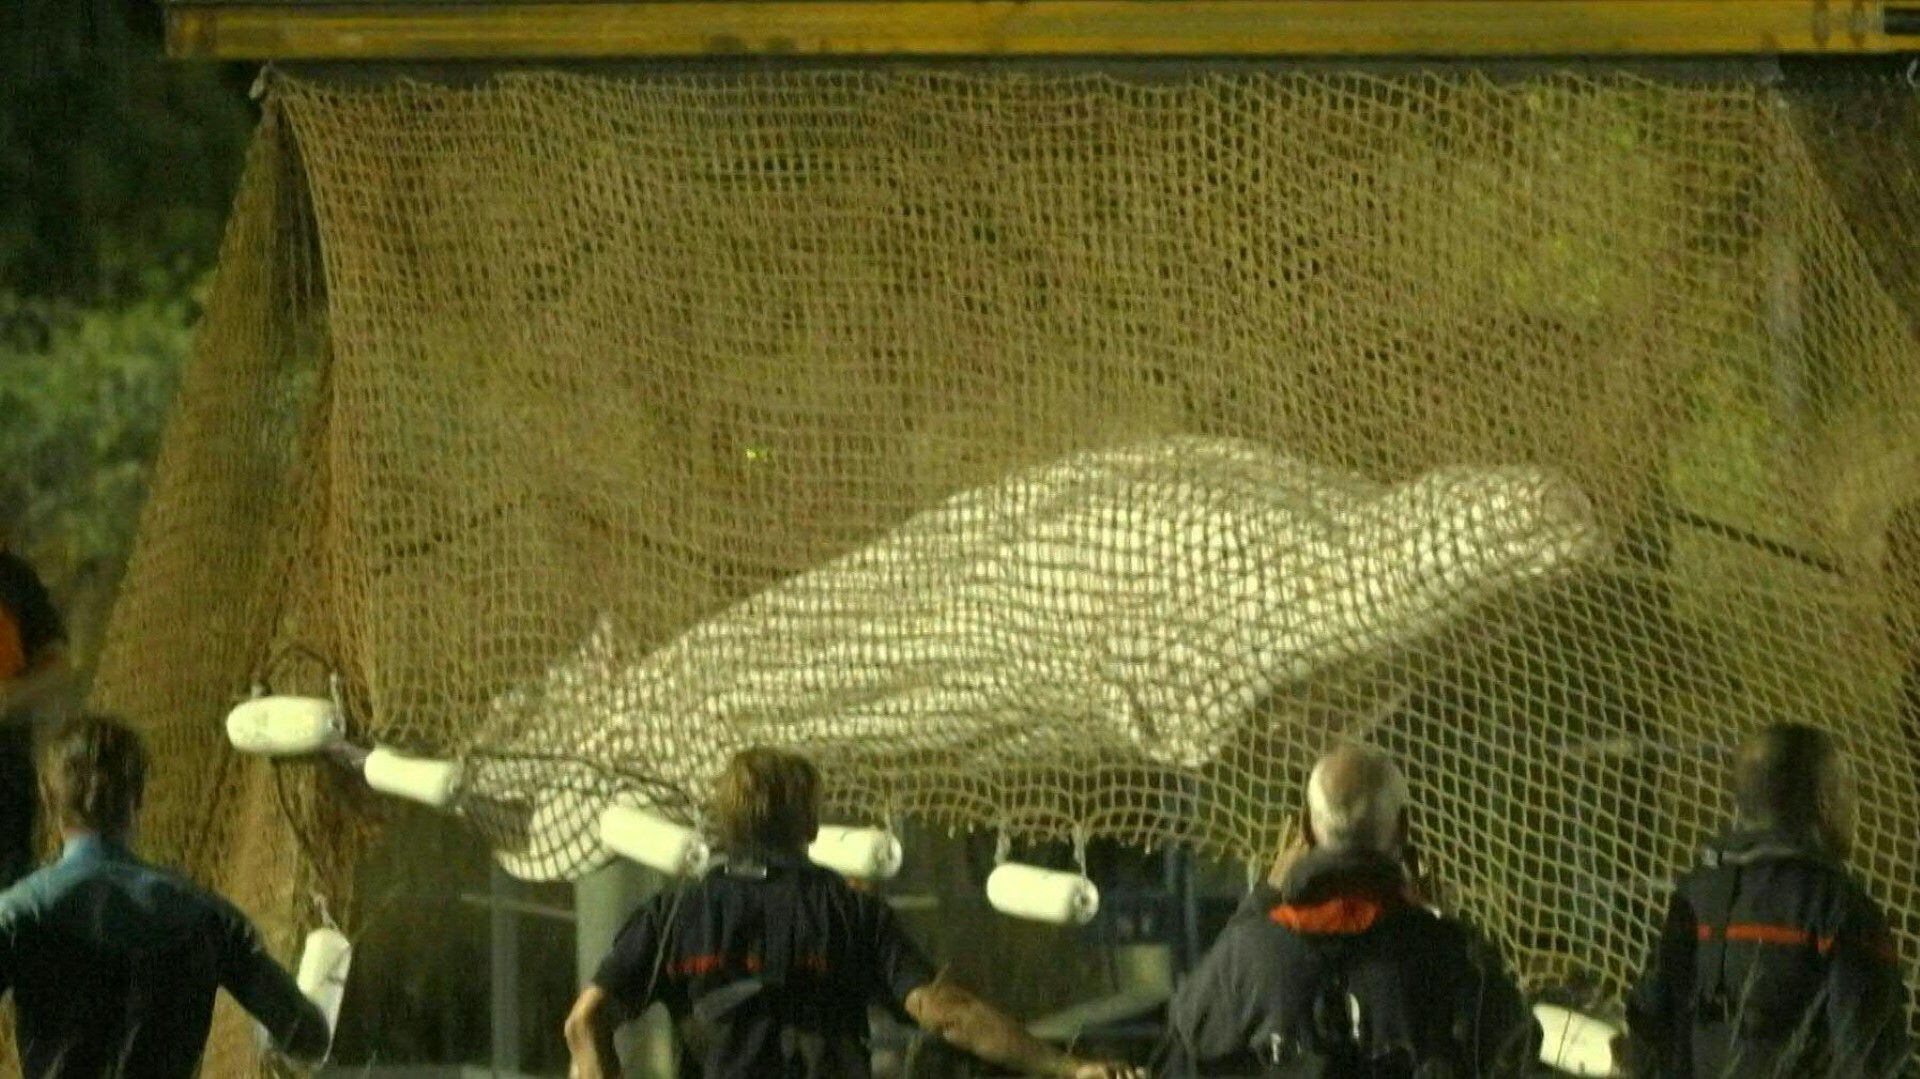 La ballena beluga extraída del río Sena, en el norte de Francia, tras permanecer varada durante más de una semana, murió cuando era transportada hacia un lugar donde debía ser tratada, anunciaron el miércoles autoridades locales.